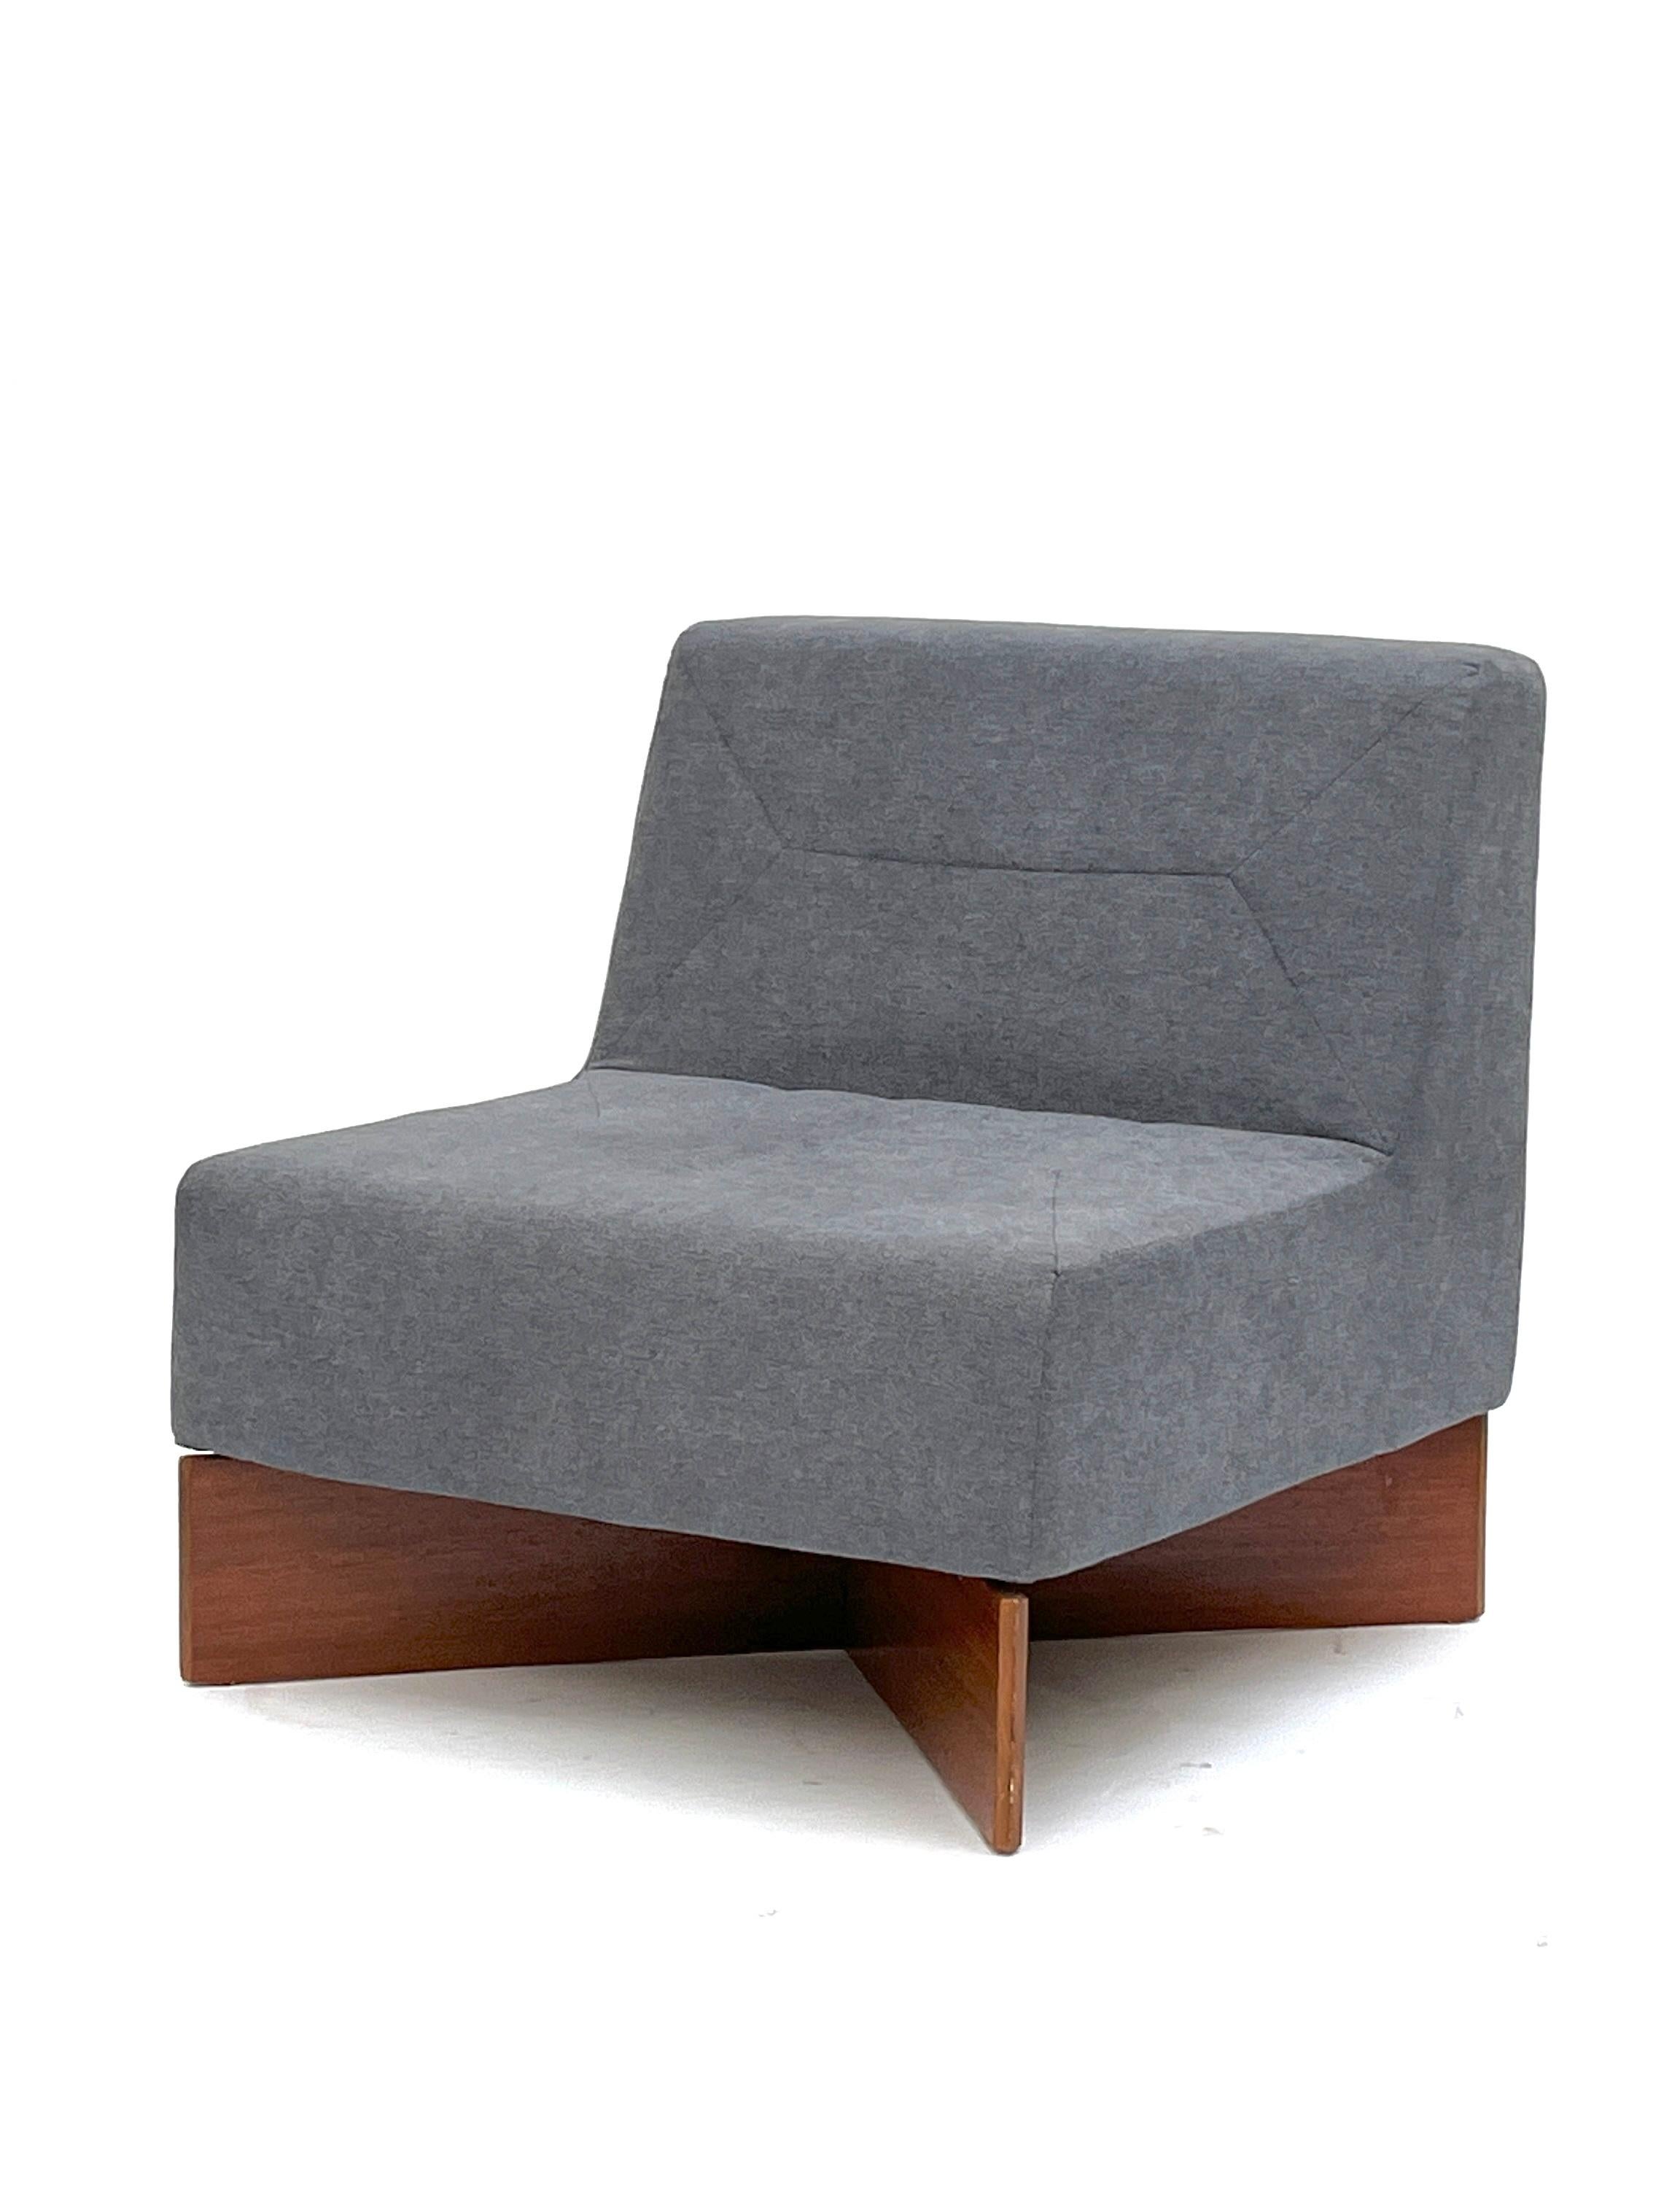 Ensemble de 2 fauteuils en teck Aquilon de Pierre Guariche, Les Huchers-Minvielle, 1960

Rare meuble Aquilon de Pierre Guariche

Pierre Guariche (1926 - 1995) est l'un des légendaires designers français des années 1950, qui a marqué son époque